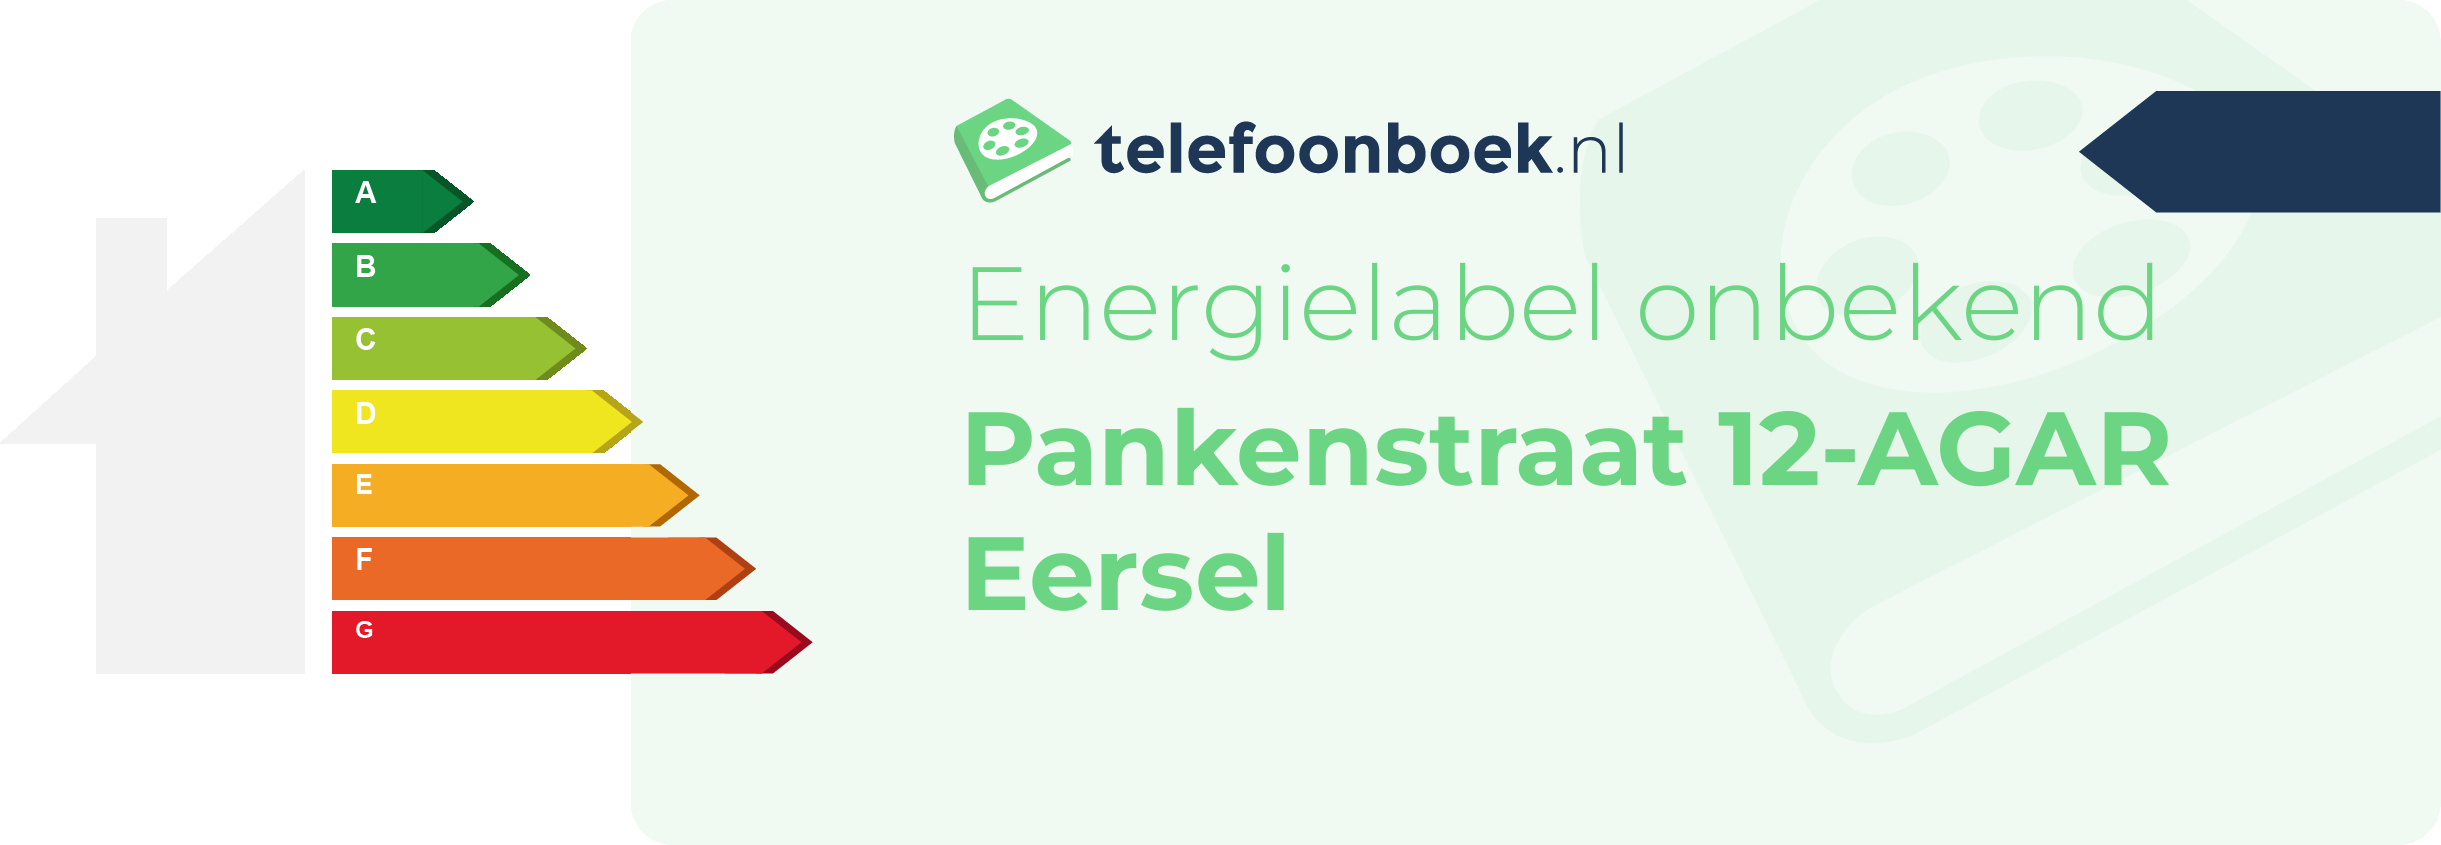 Energielabel Pankenstraat 12-AGAR Eersel